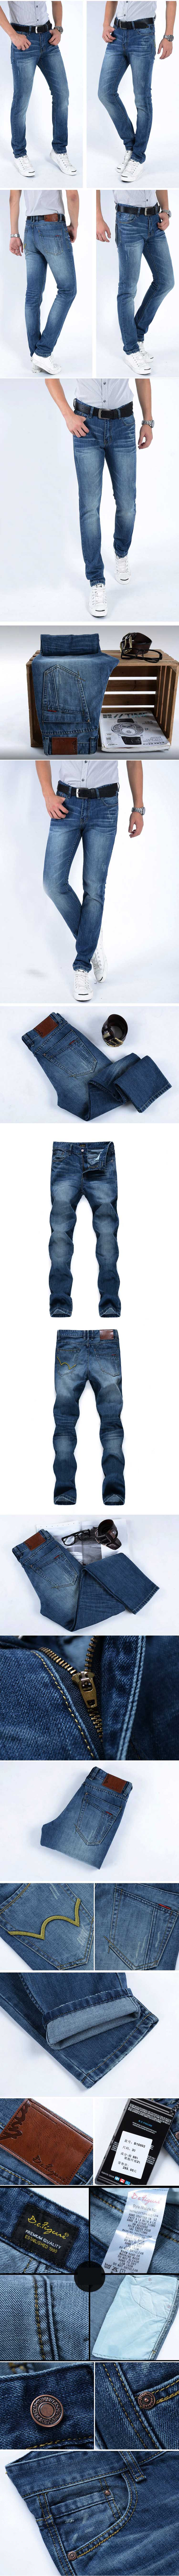 jual celana jeans pria model terbaru terbuat dari bahan jeans berkualitas yang nyaman dipakai dan tahan lama, temukan koleksi celana jeans pria lain nya disini